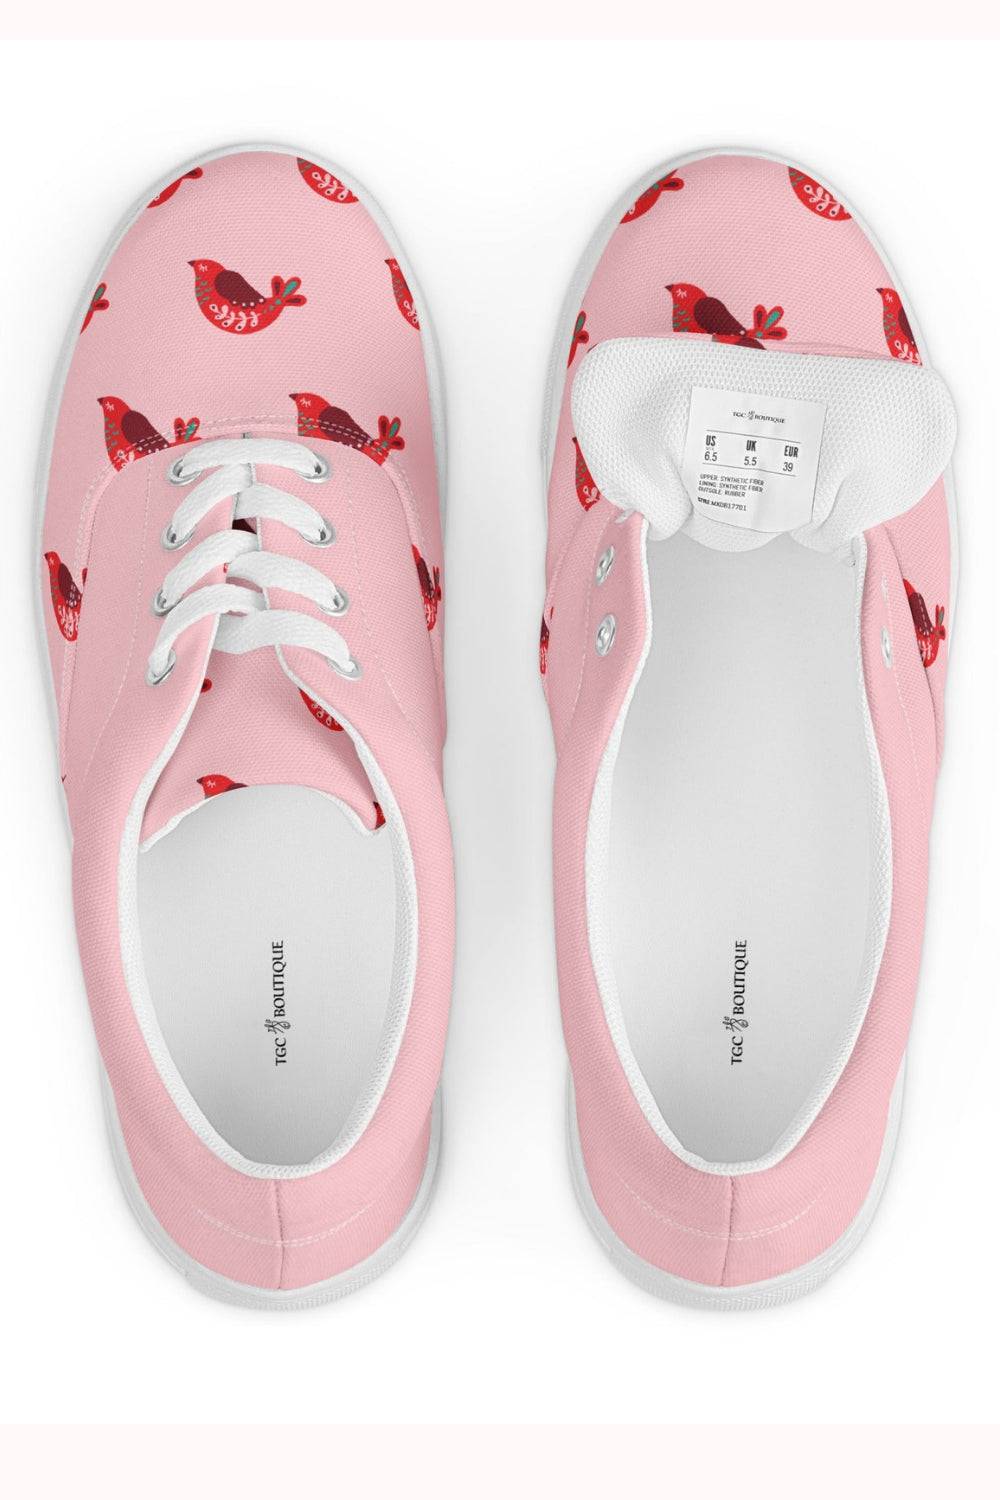 Lace Up Pink Canvas Shoes - TGC Boutique - Canvas Shoes